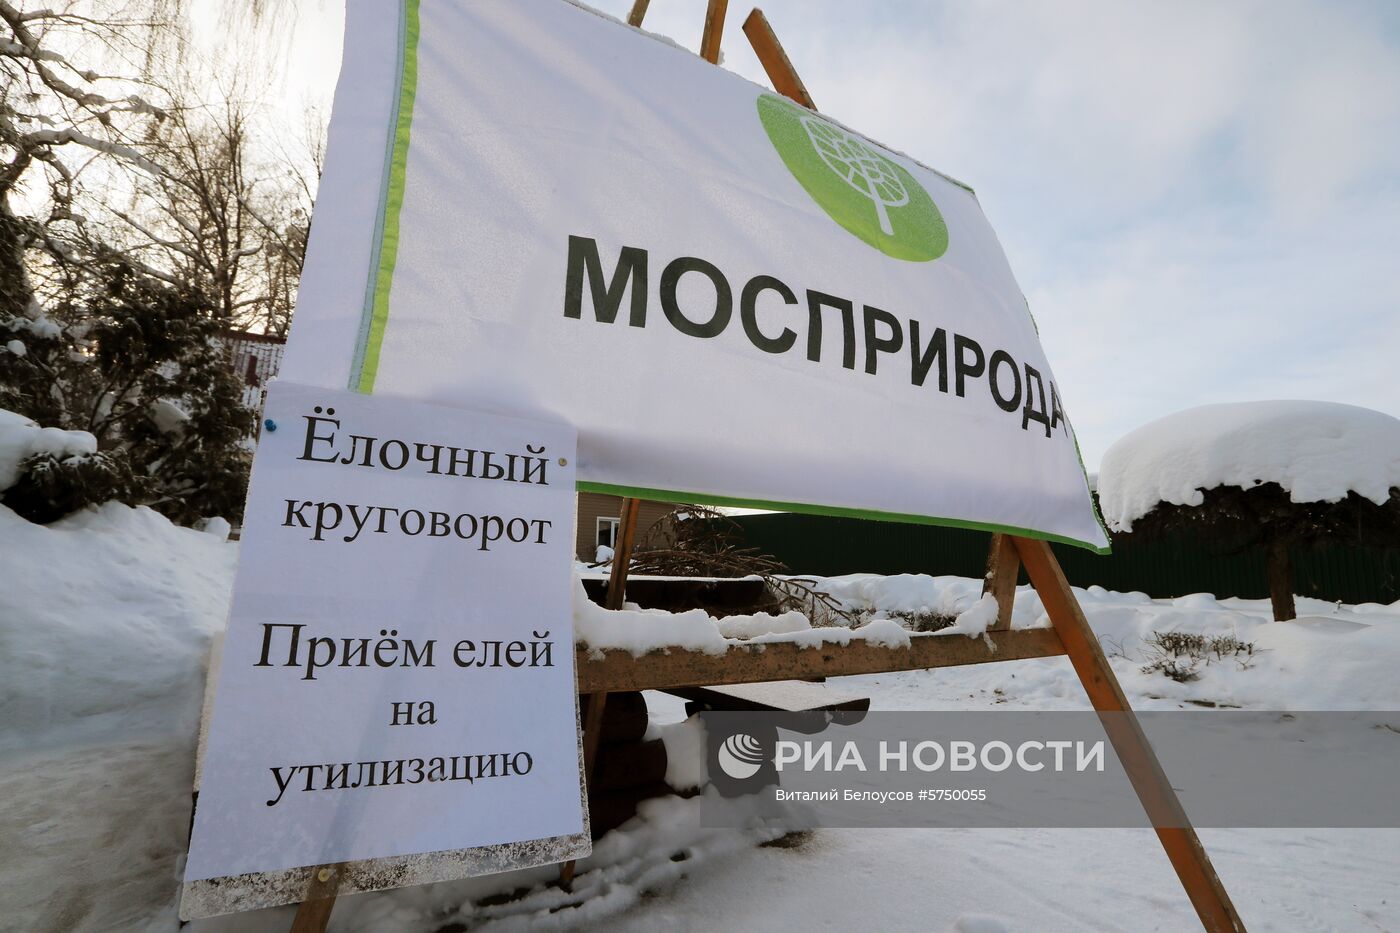 Пункты утилизации новогодних елок в Москве